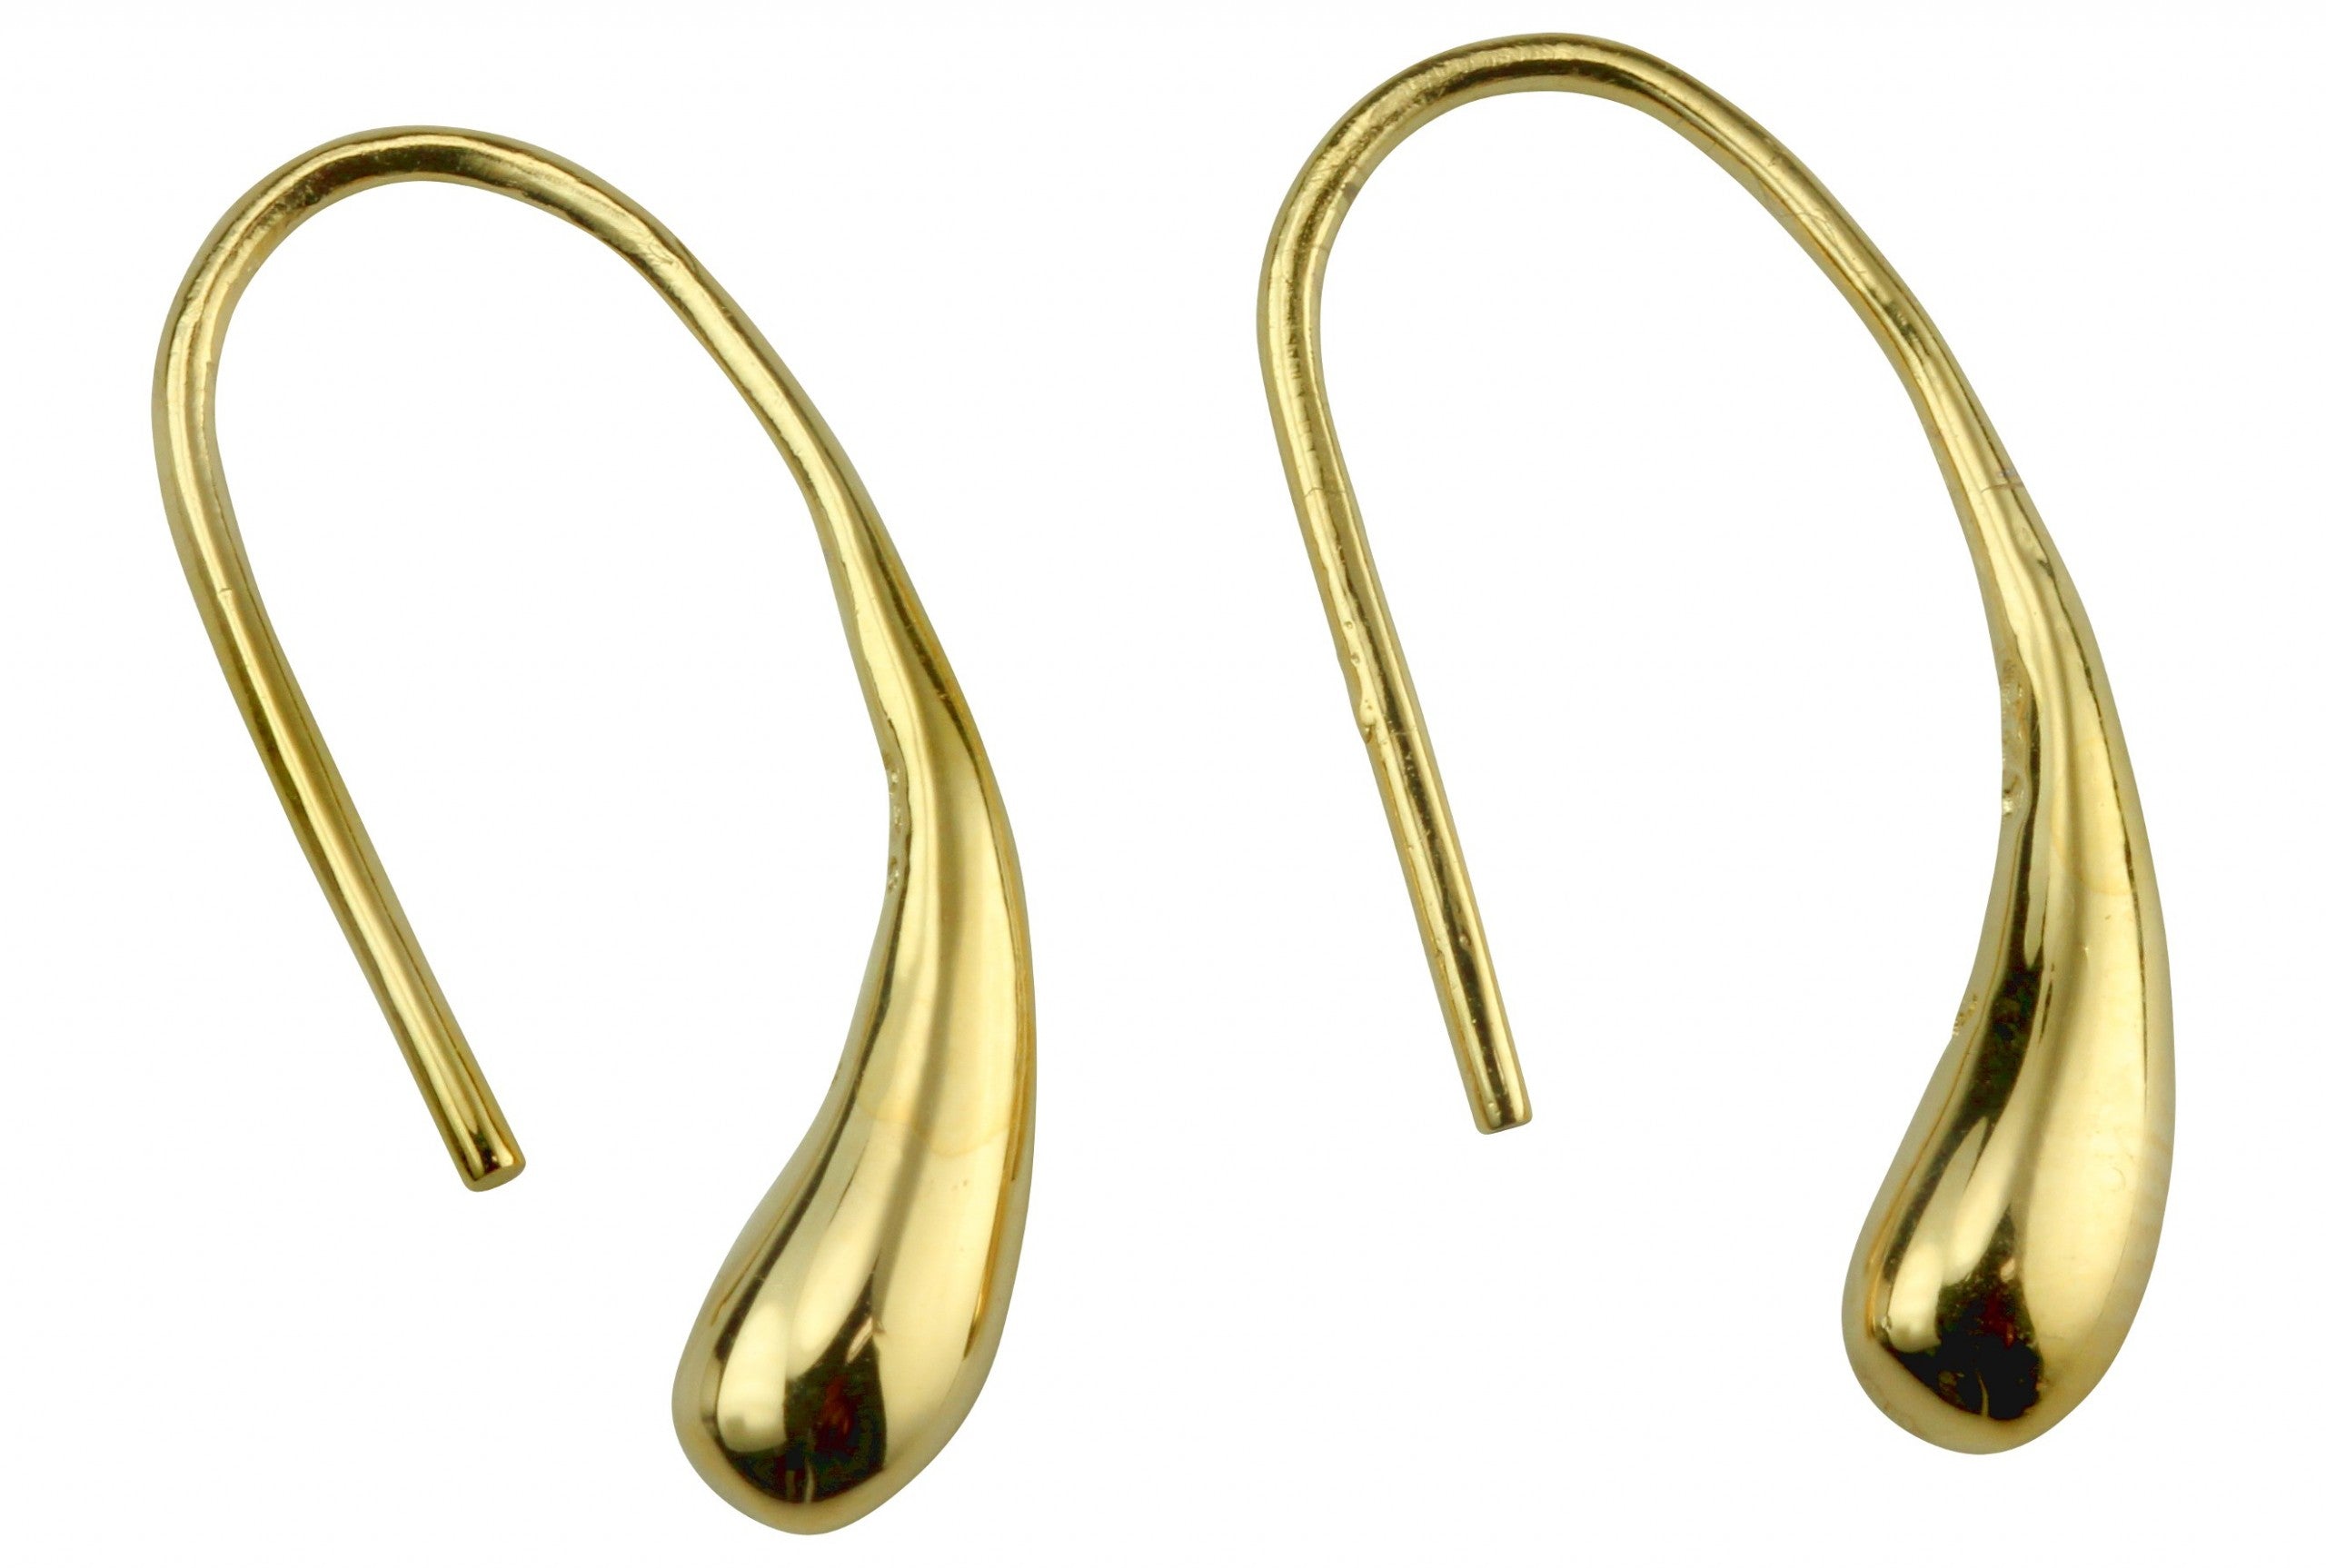 Ohrringe aus Silber mit einer Gold plattierten Oberfläche im Tropfen Design, die als Hänger direkt im Ohr gefädelt werden.